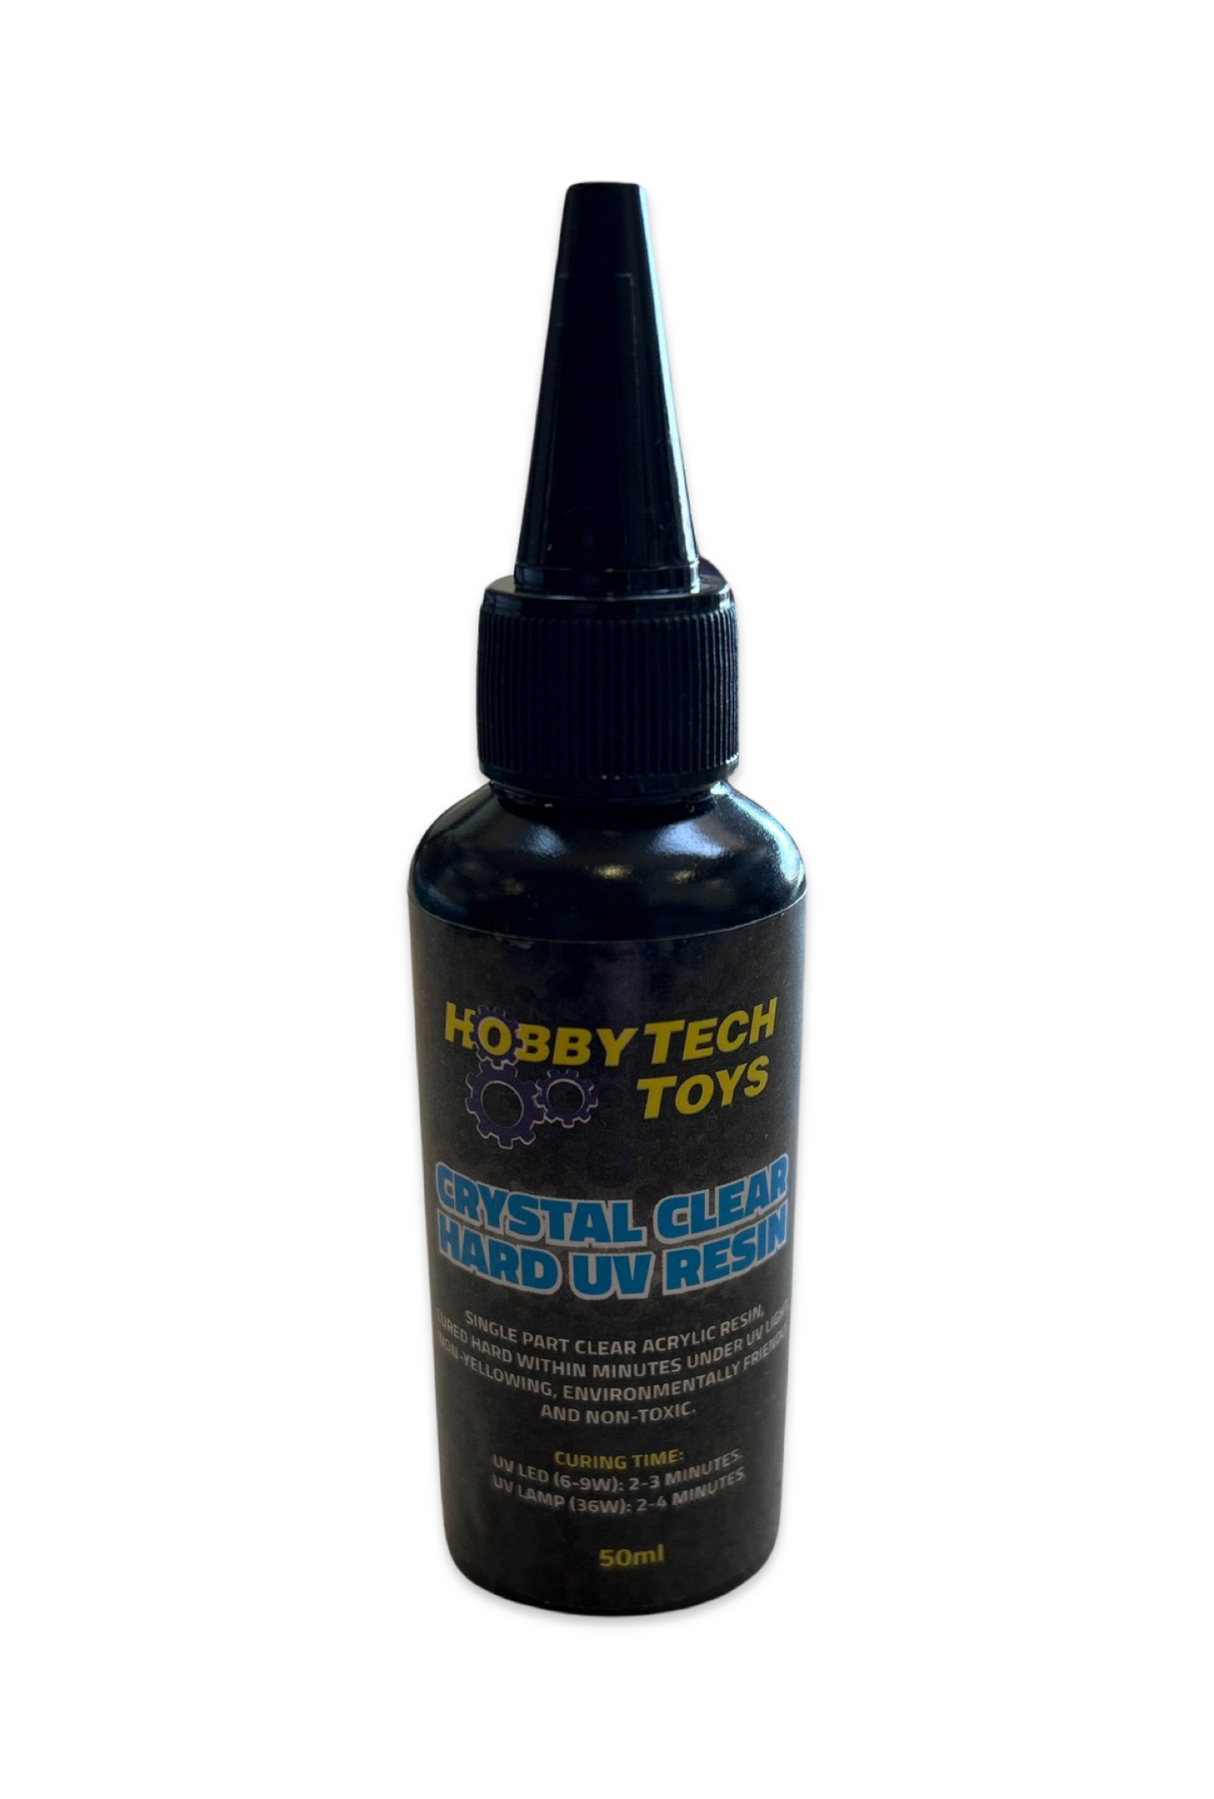 Hobbytech Crystal Clear Hard UV Resin - 50ml - Hobbytech Toys